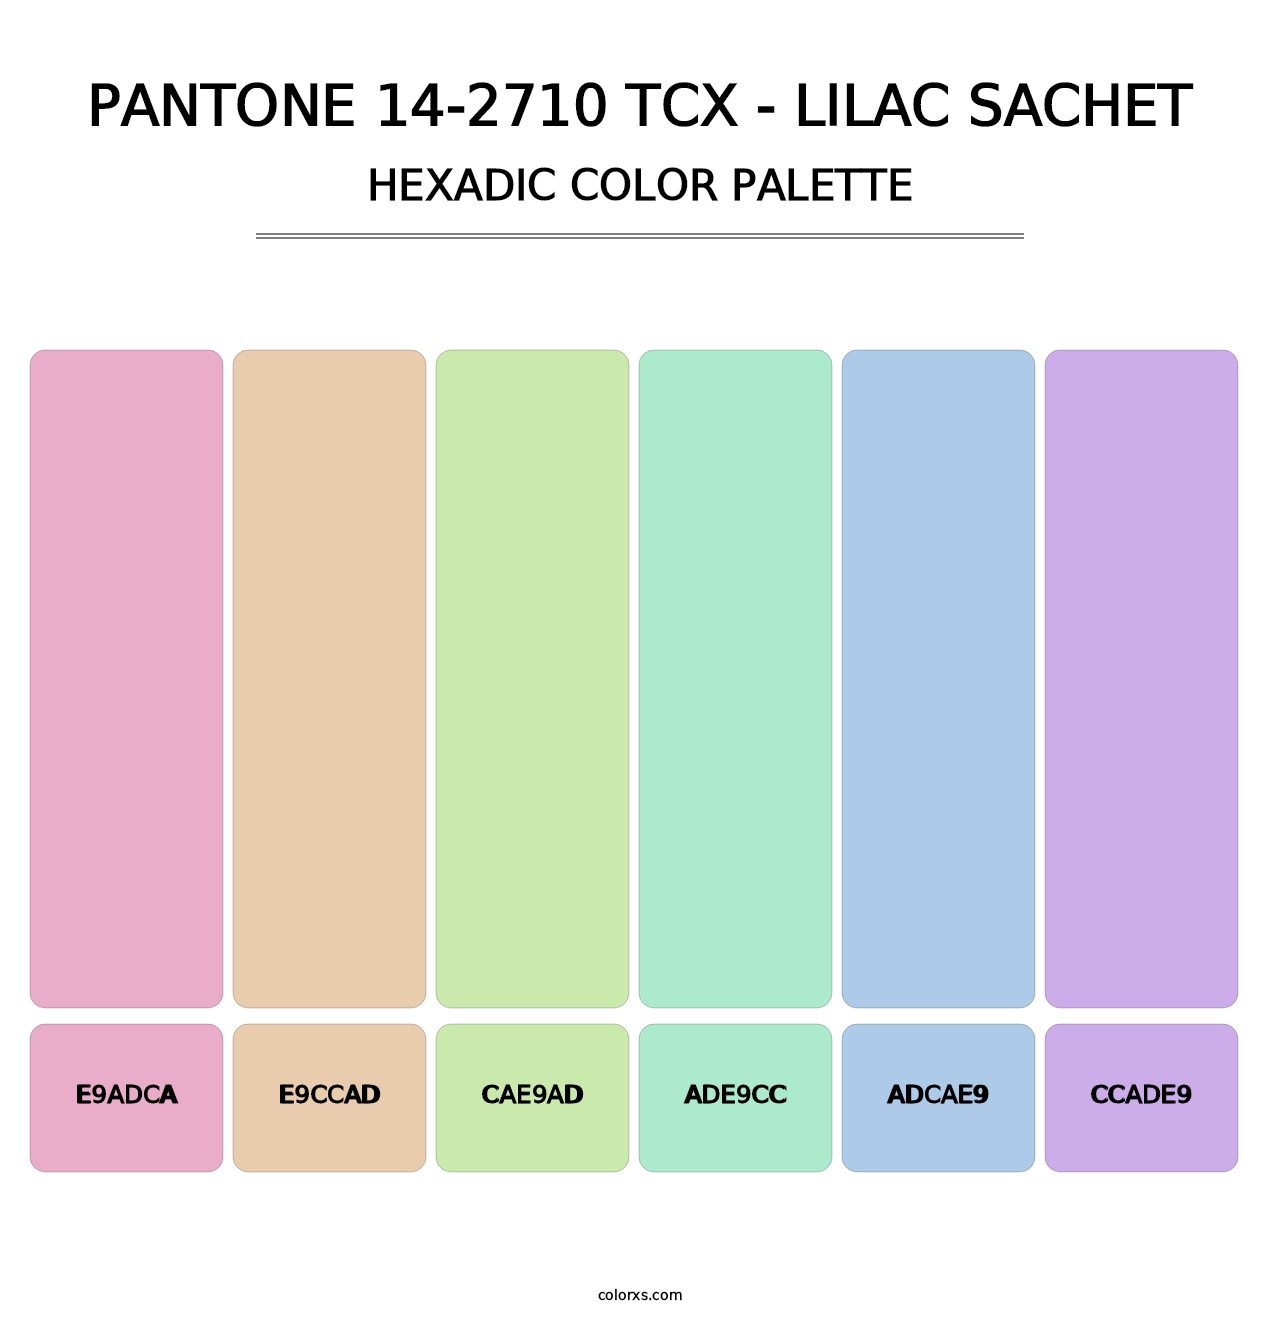 PANTONE 14-2710 TCX - Lilac Sachet - Hexadic Color Palette